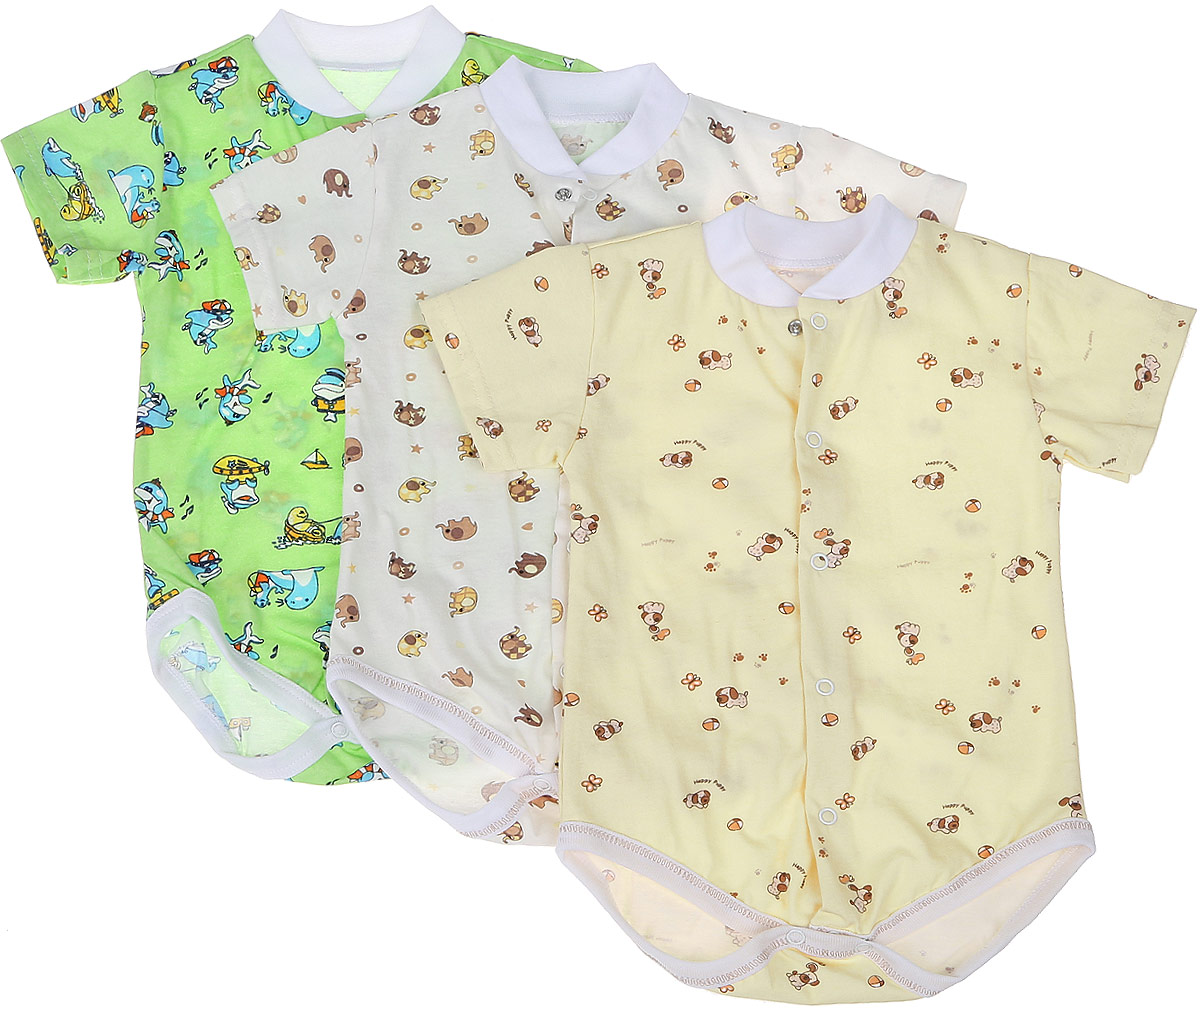 Боди-футболка детское Фреш Стайл, цвет: зеленый, желтый, бежевый, 3 шт. 10-325м. Размер 86, 18 месяцев